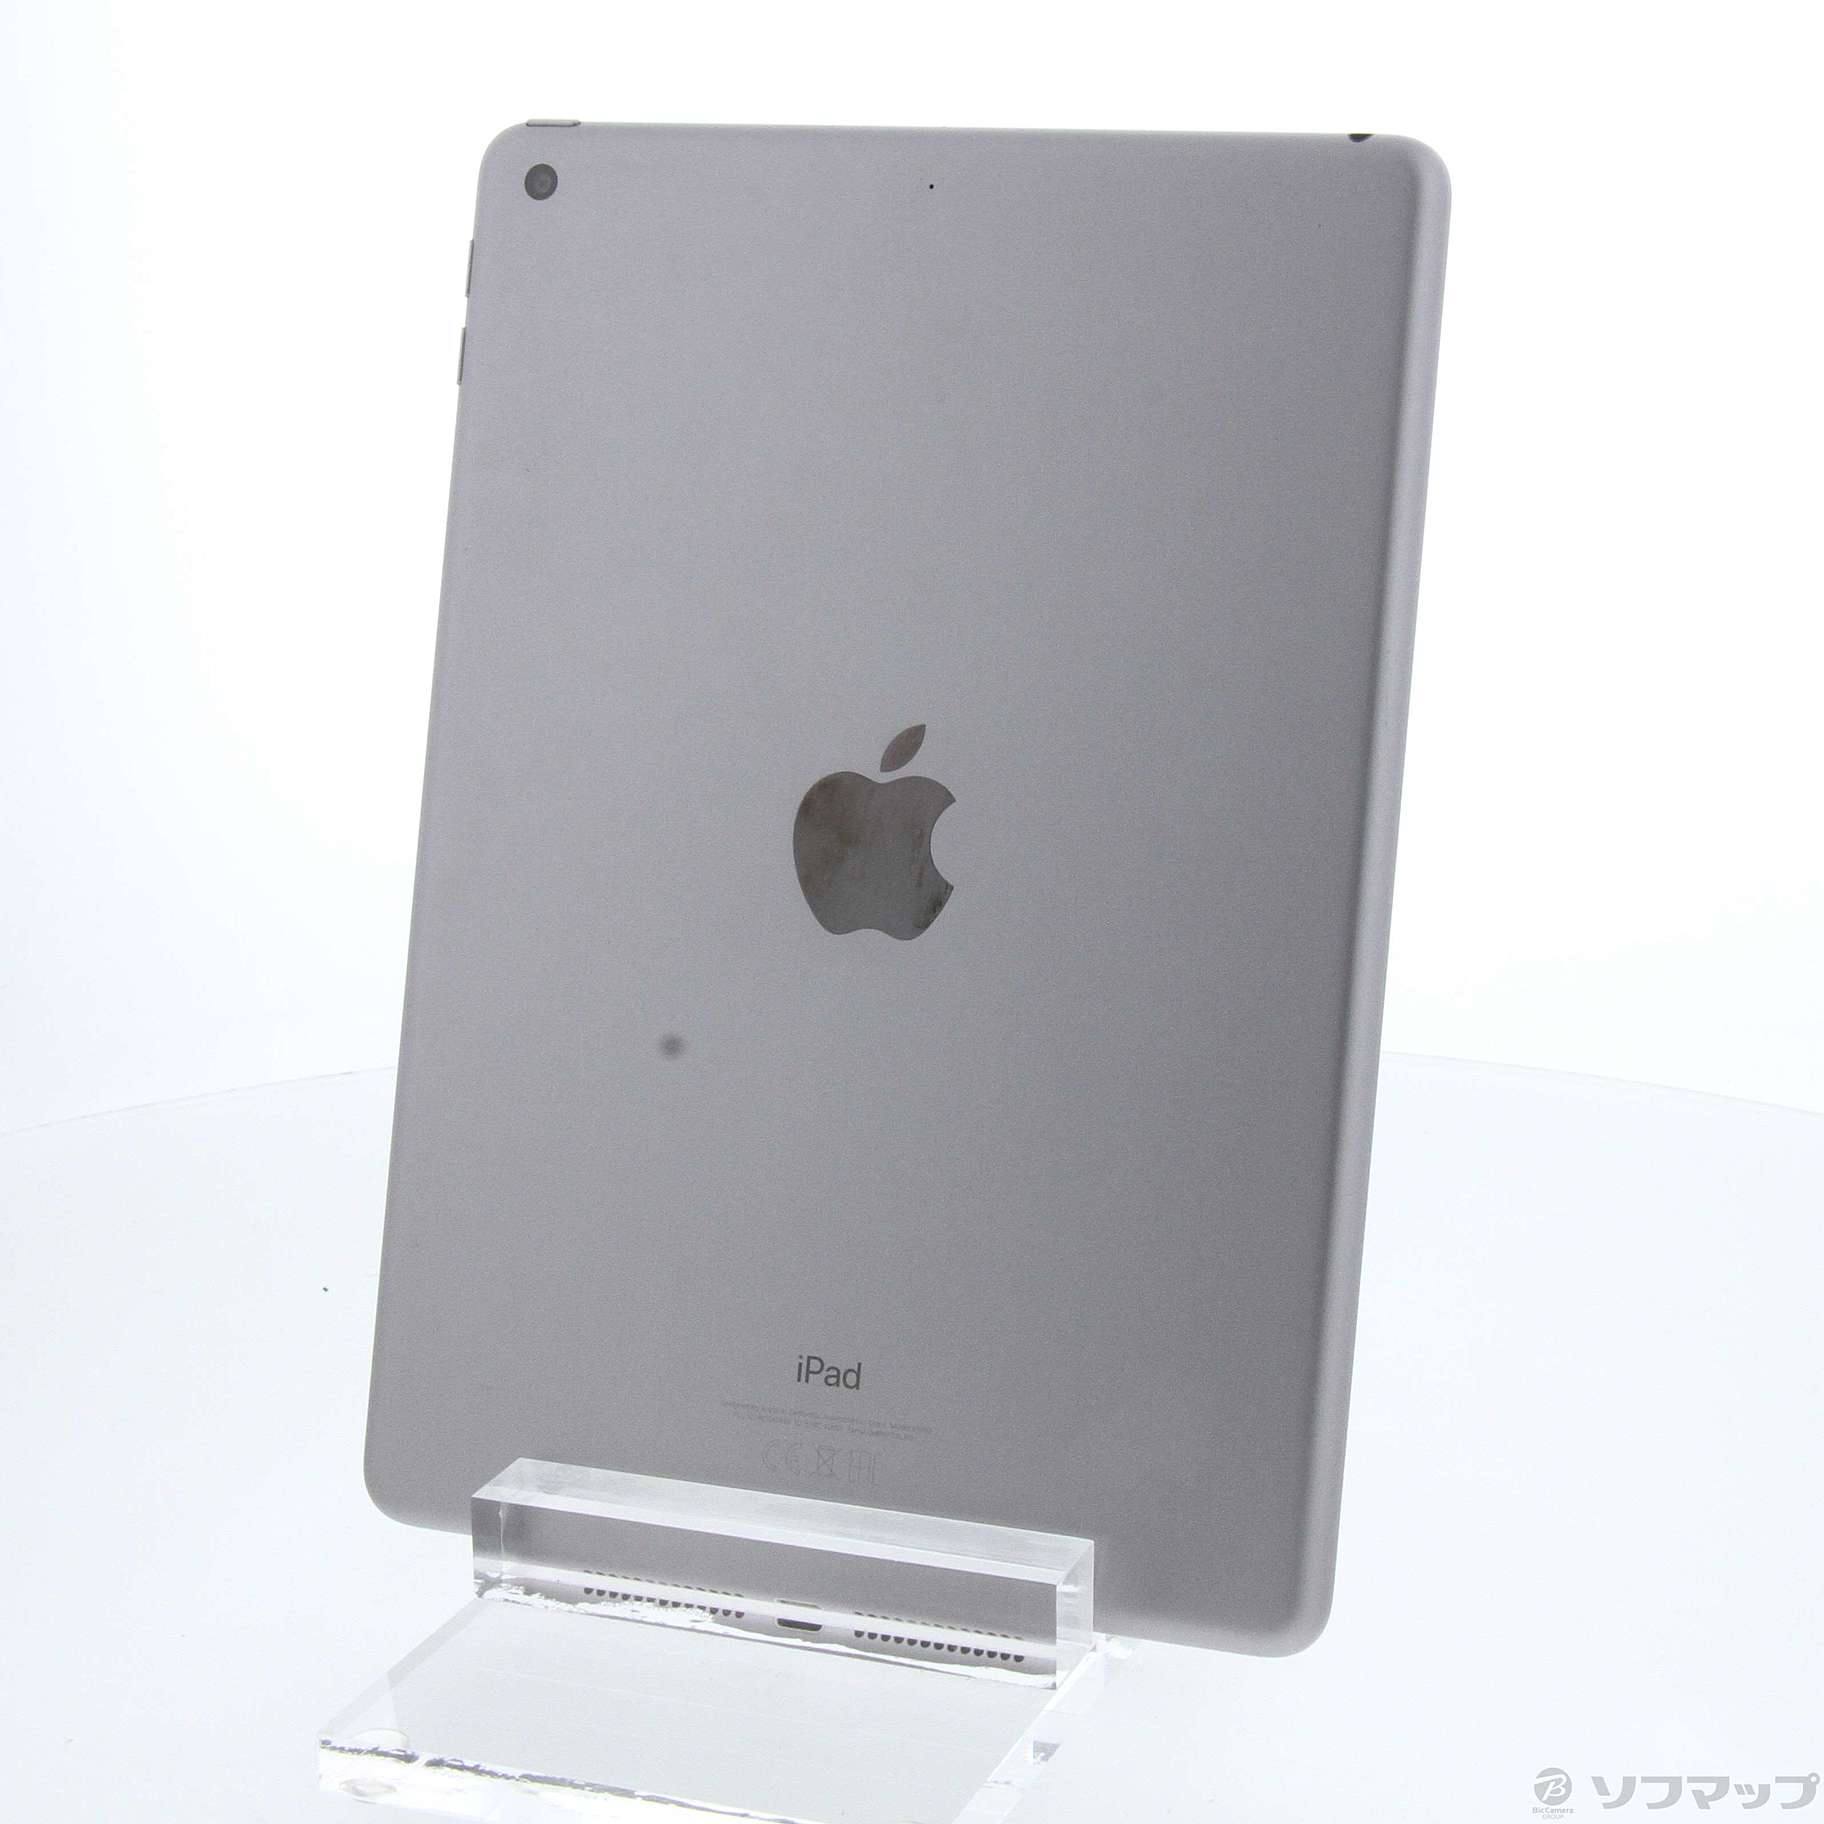 【ロック解除済】iPad第6世代32GB スペースグレイ